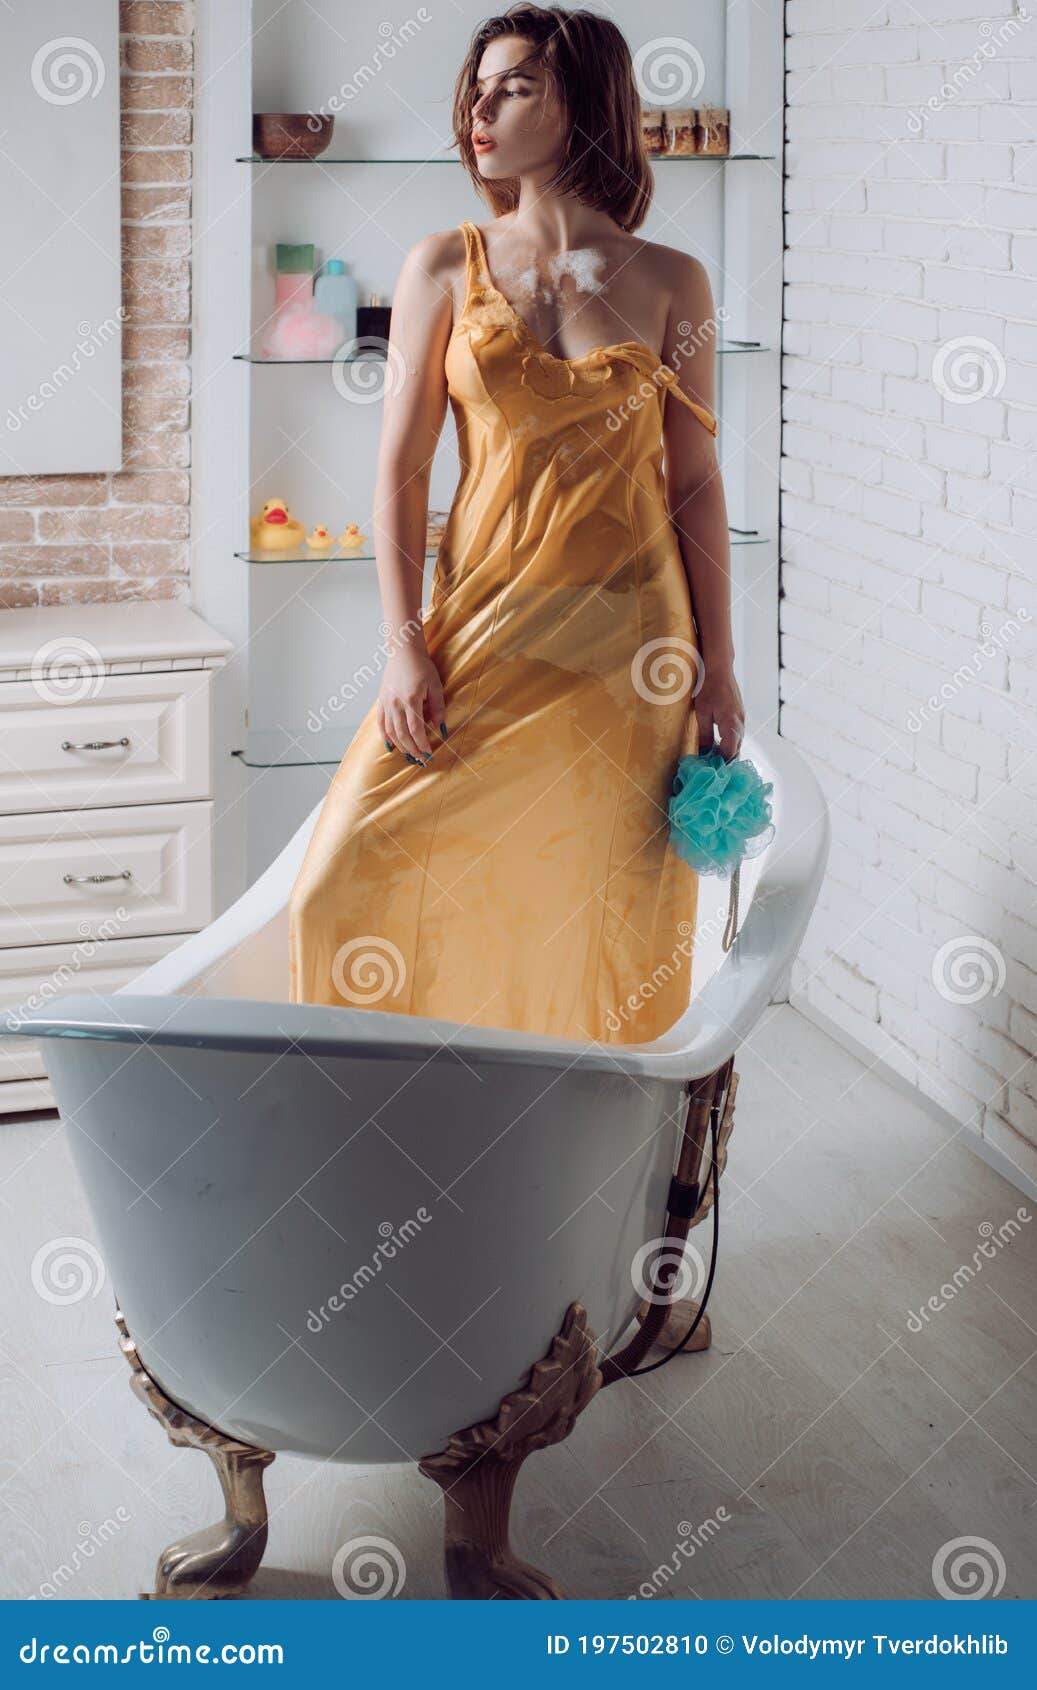 女性躺在浴缸裡洗泡泡浴圖片素材-JPG圖片尺寸6582 × 4388px-高清圖案501403120-zh.lovepik.com